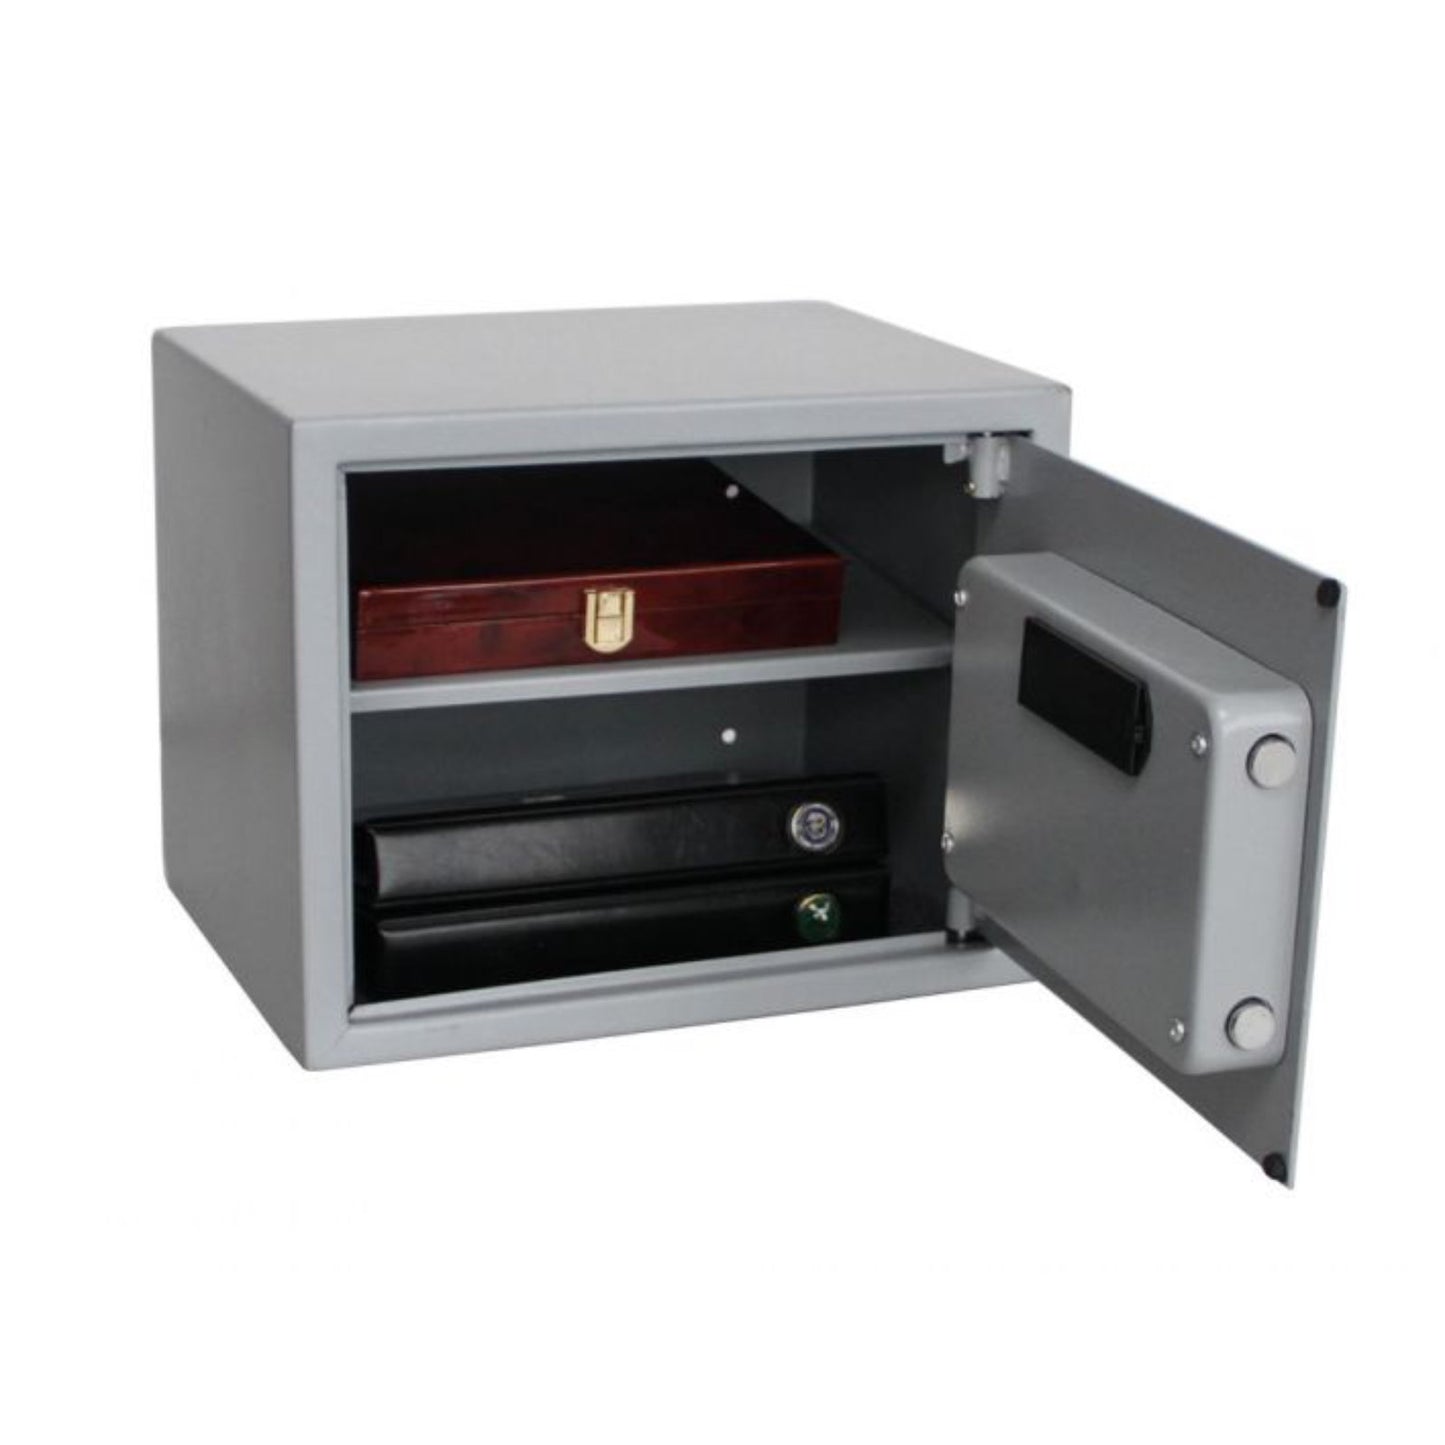 Tresor "Midi" in Grau mit Schlüssel, Zahlenschloss oder Fingerabdruck, 380 mm x 300 mm x 300 mm